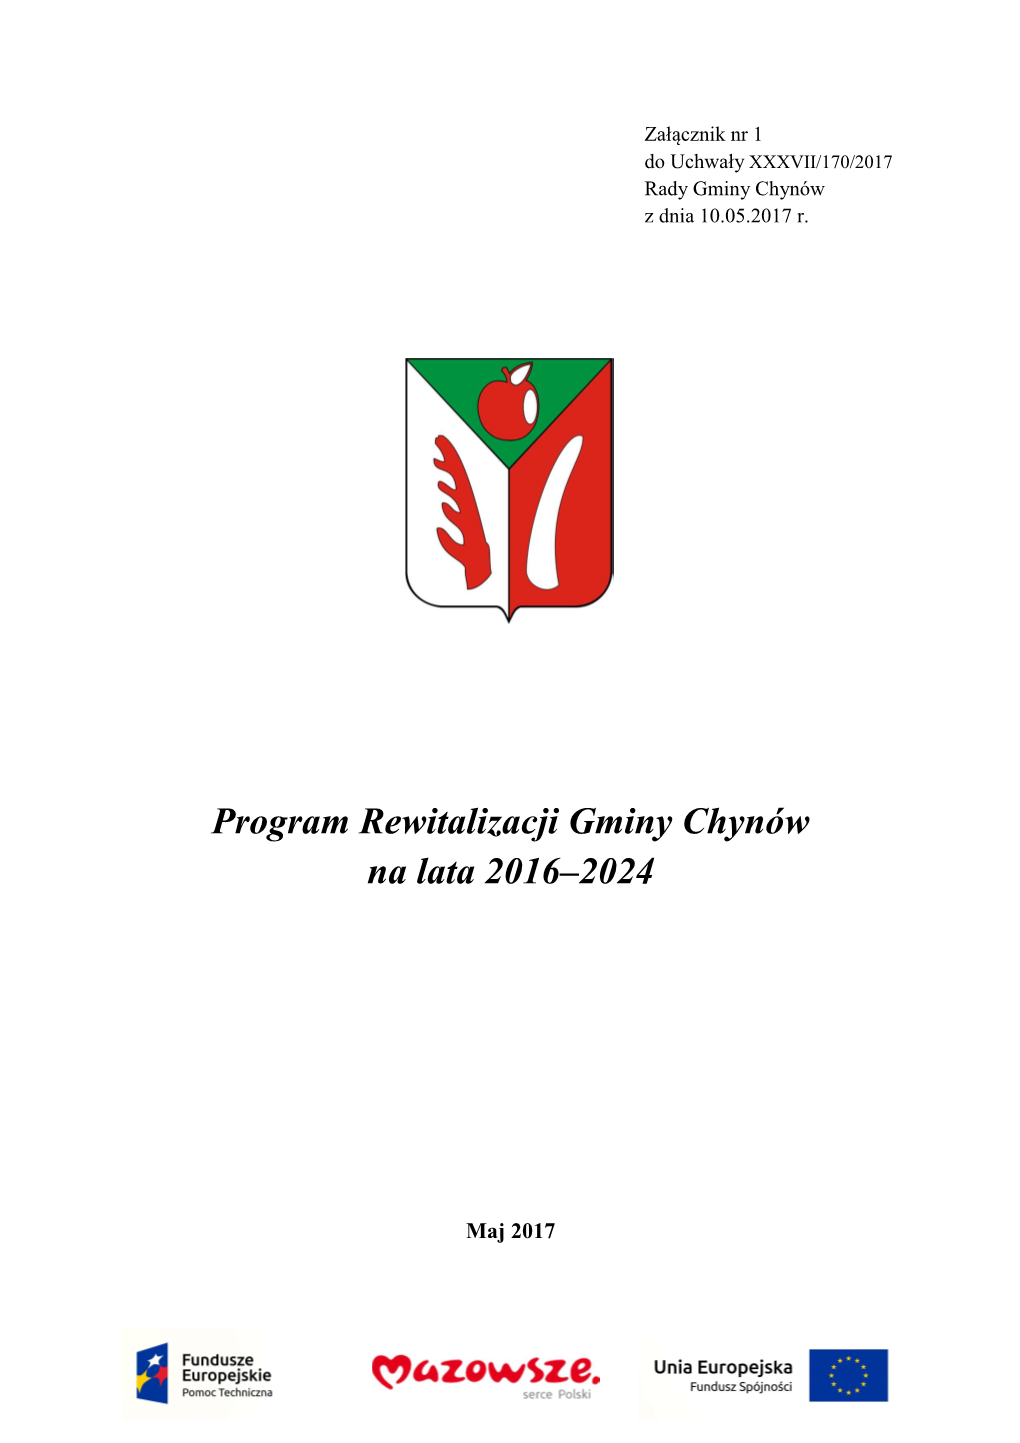 Program Rewitalizacji Gminy Chynów 2016-2024 10.05.2017